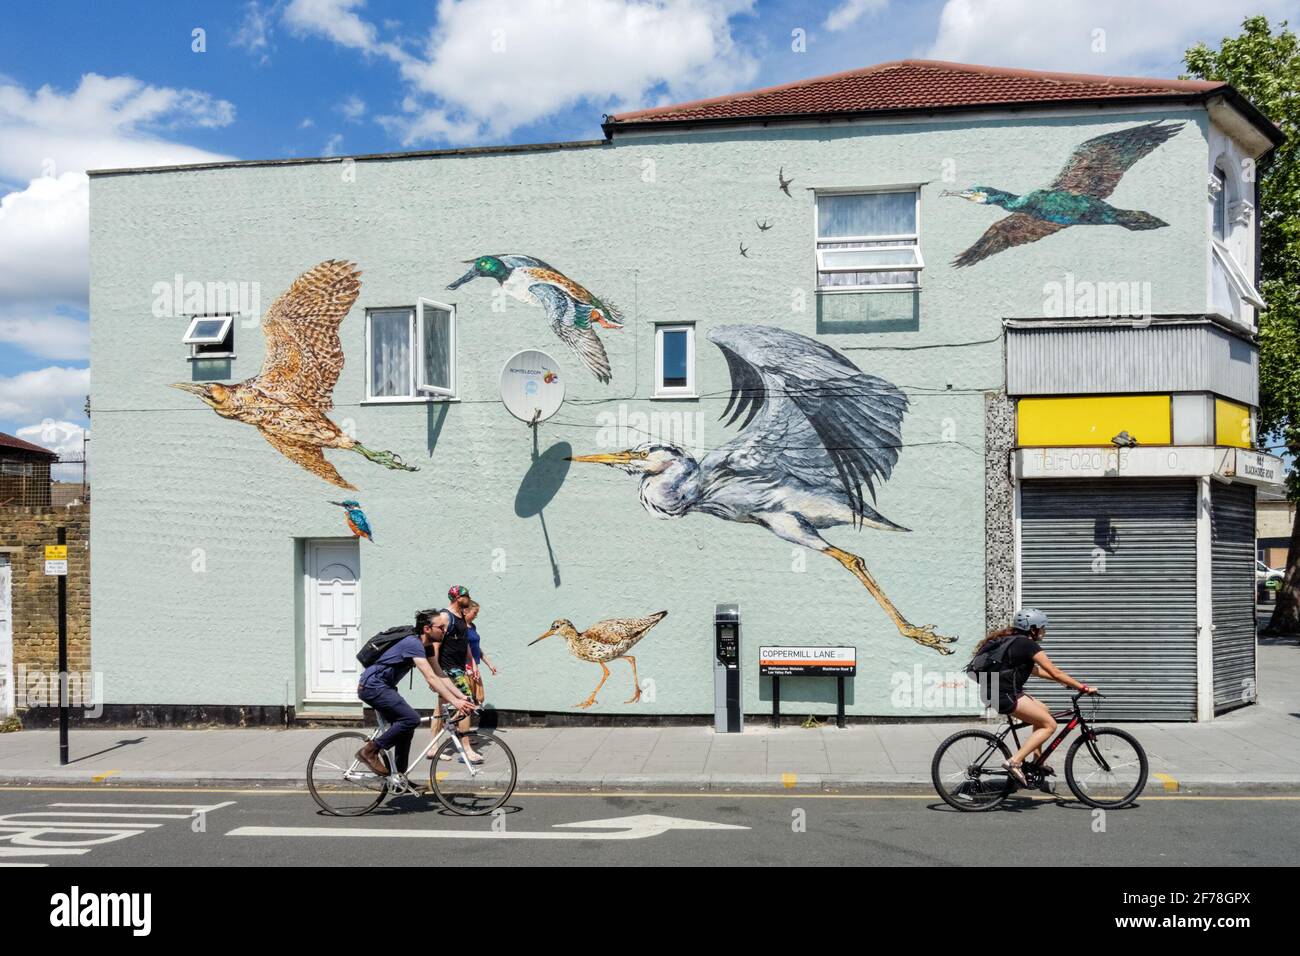 Graffitis avec des oiseaux sauvages sur un mur d'un bâtiment à Walthamstow, Londres Angleterre Royaume-Uni Banque D'Images